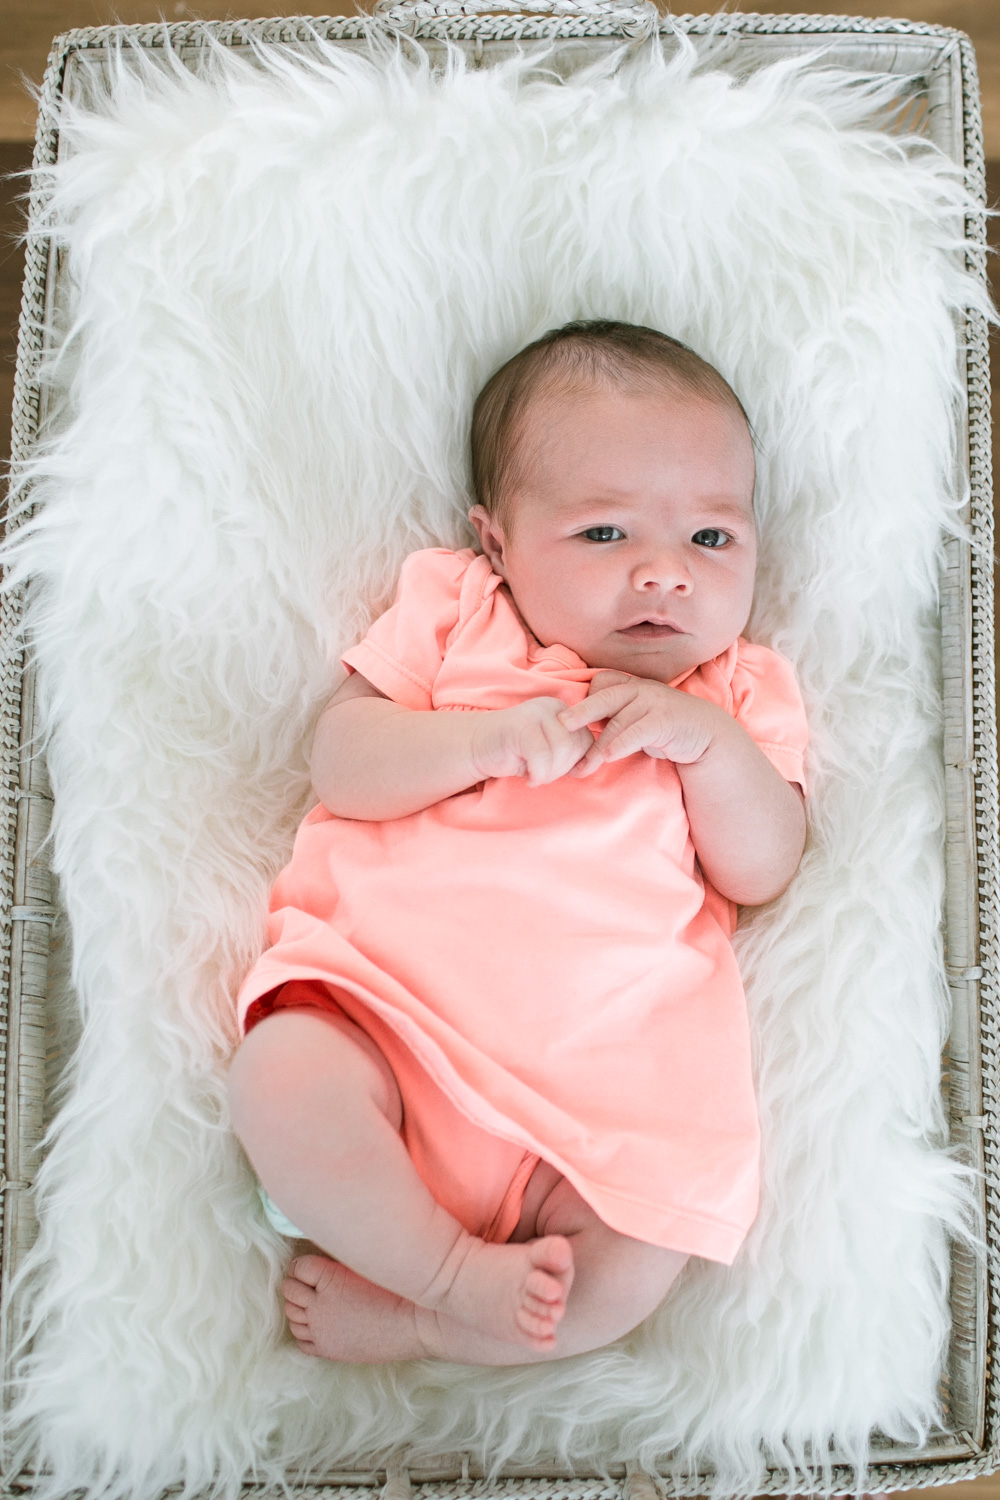 zara newborn baby clothes